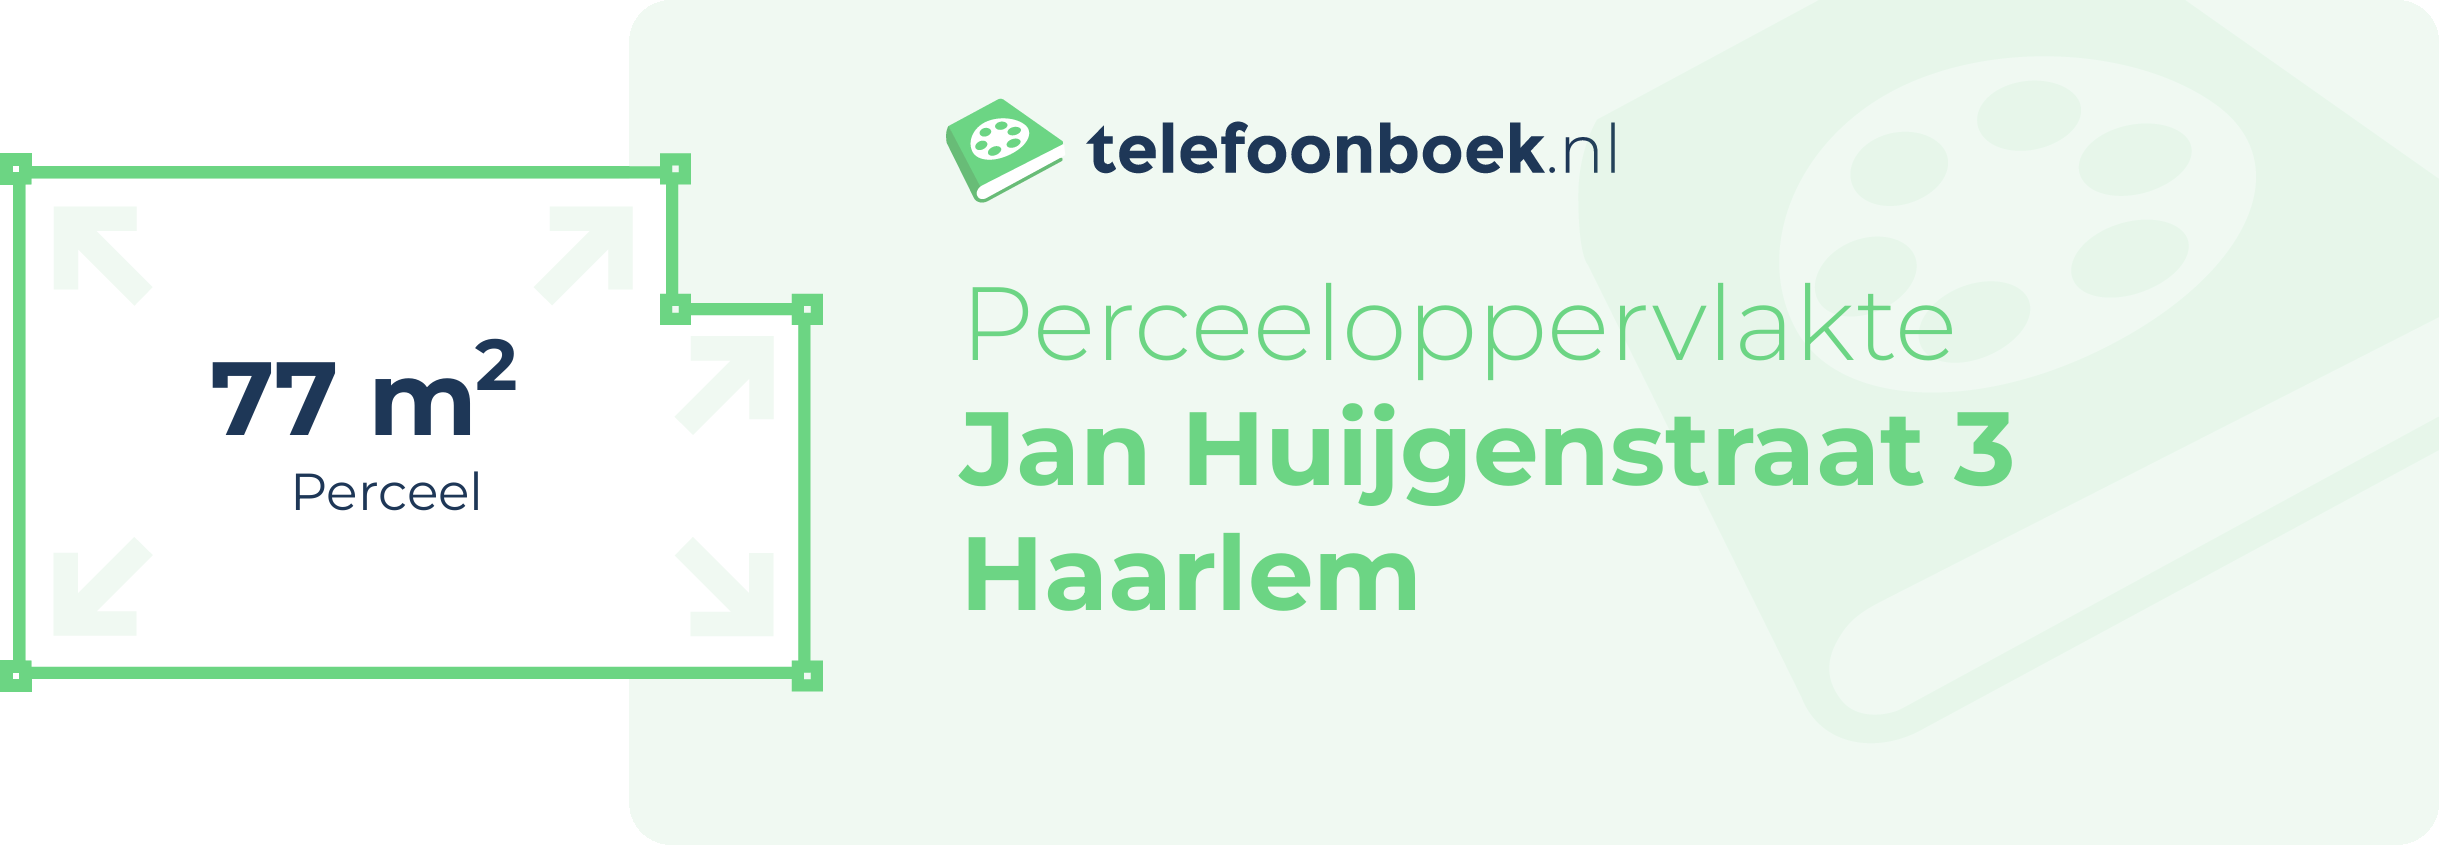 Perceeloppervlakte Jan Huijgenstraat 3 Haarlem